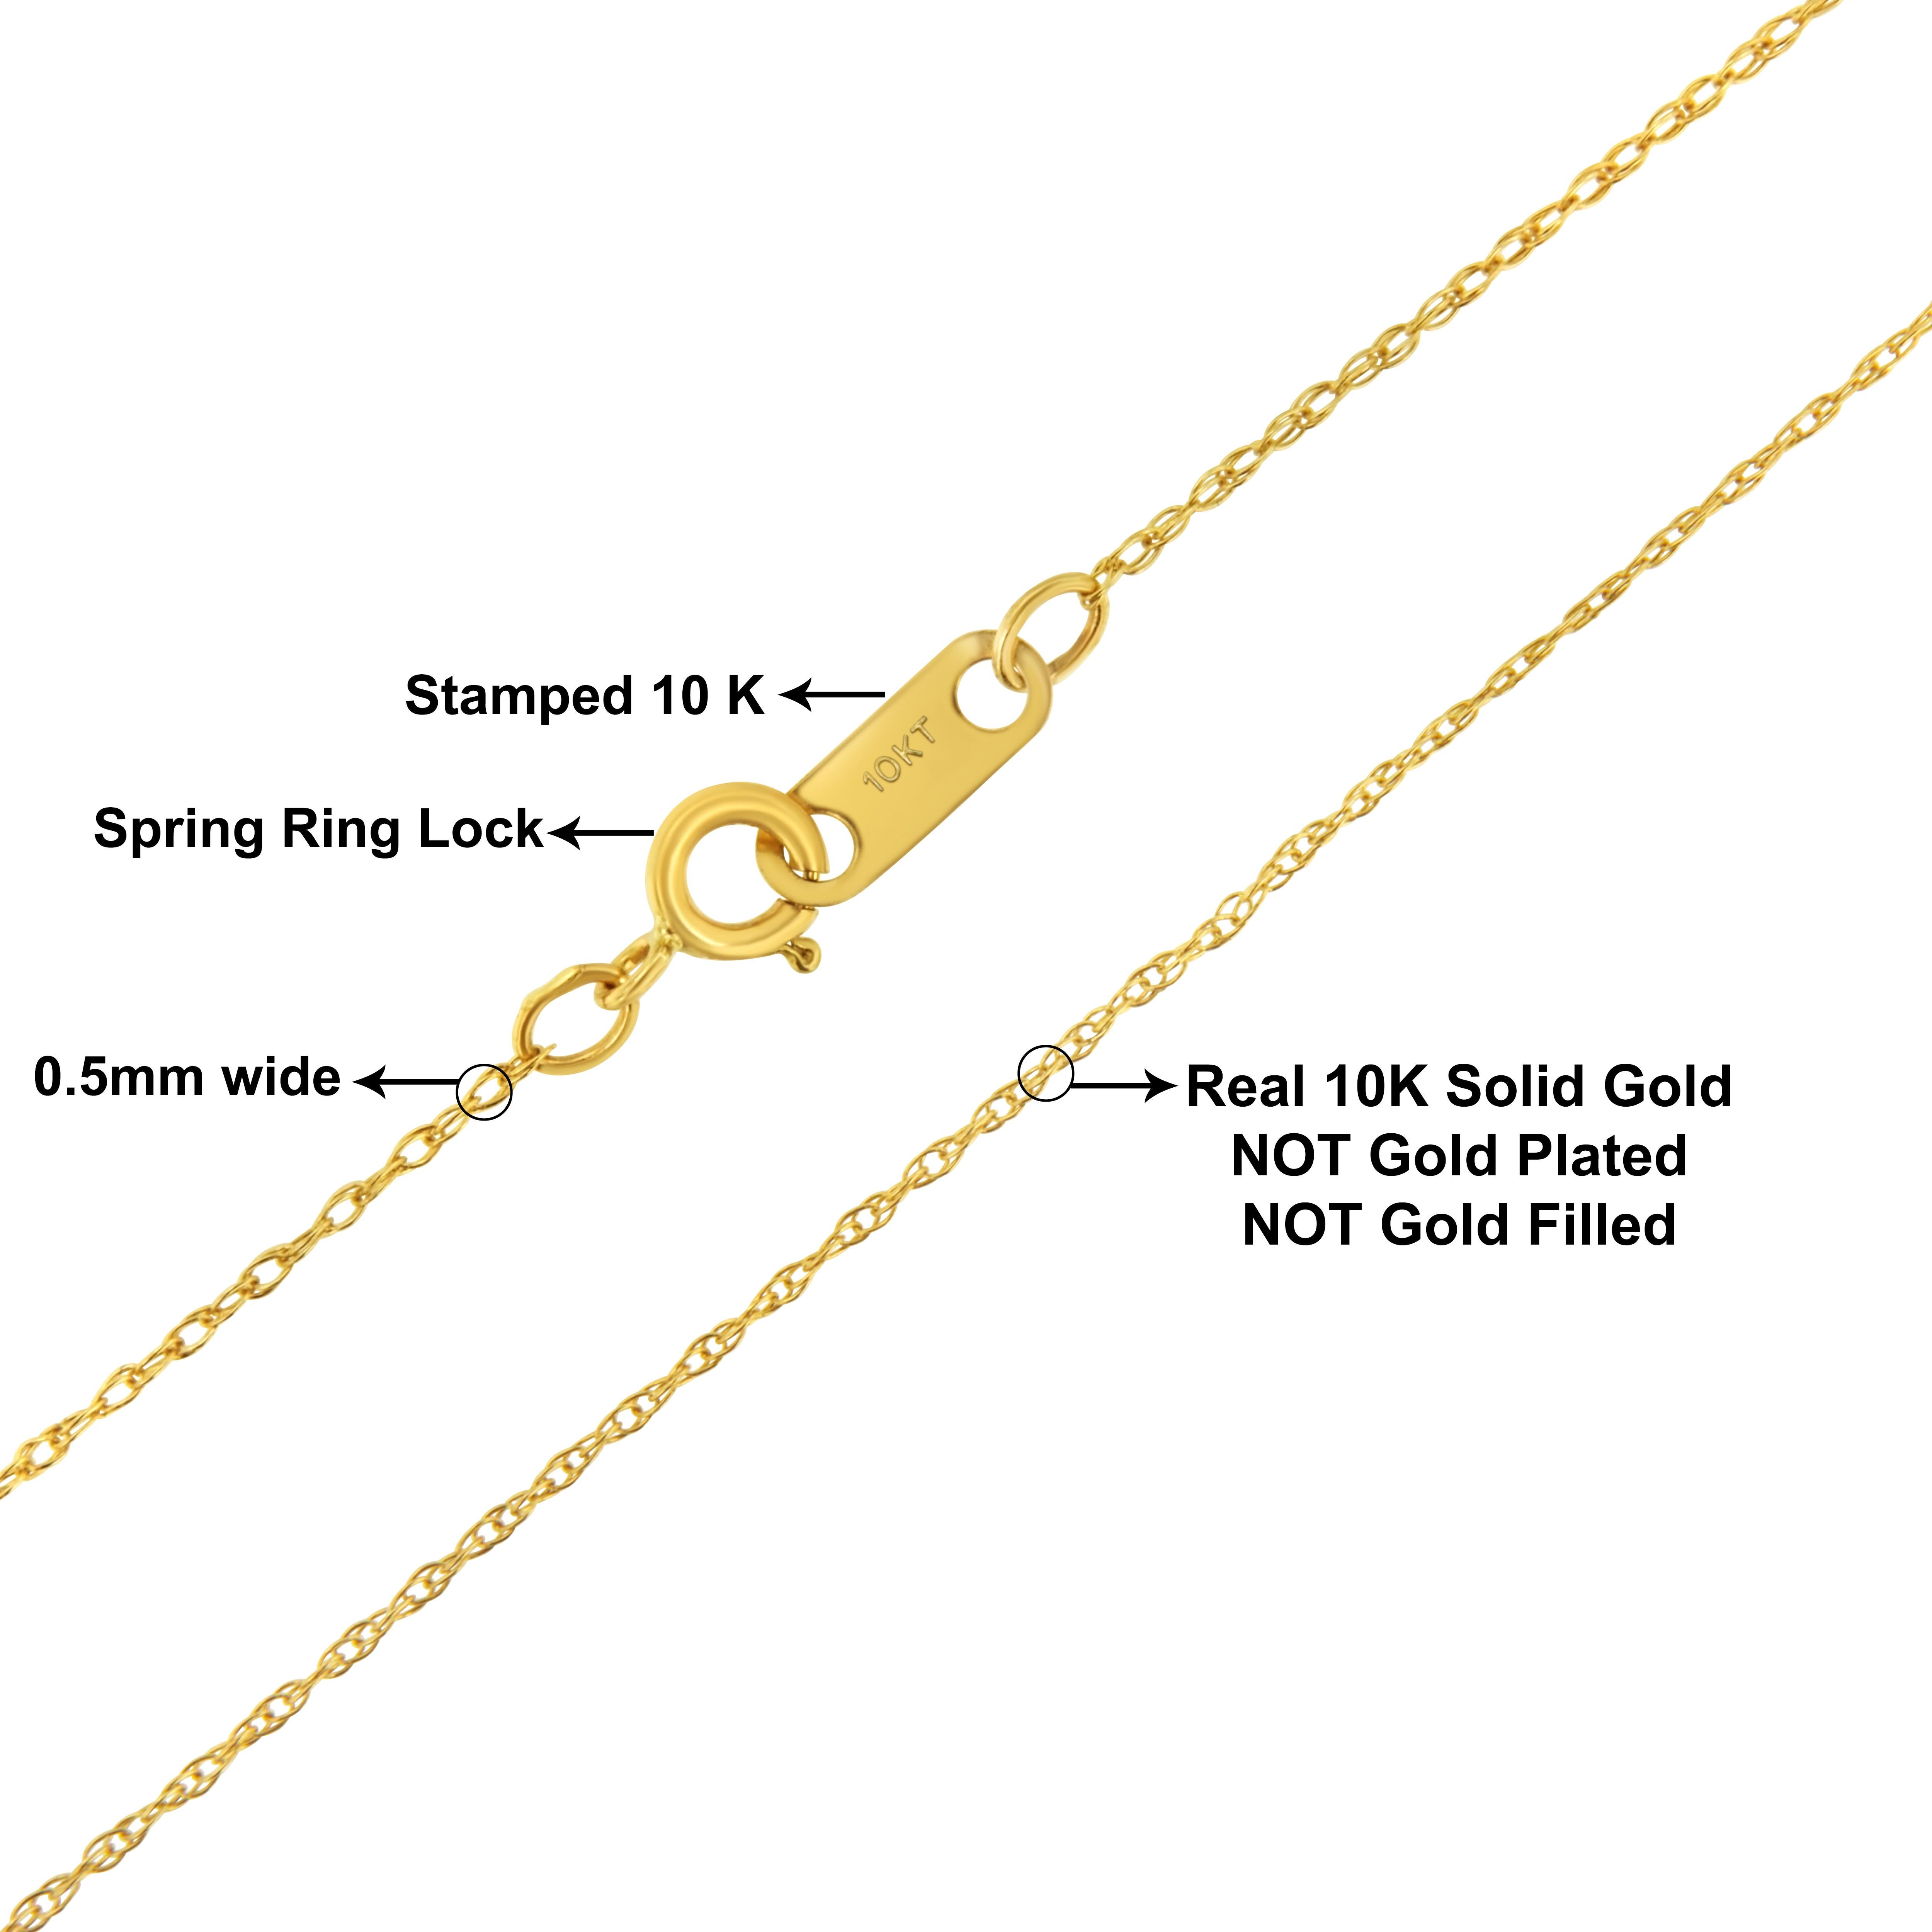 Rehaussez votre collection de bijoux avec notre collier unisexe en or jaune 10K massif de 0,5 mm, à la fois fin et délicat, de 18 pouces. Cette pièce exquise incarne l'élégance intemporelle et la polyvalence, ce qui en fait un accessoire